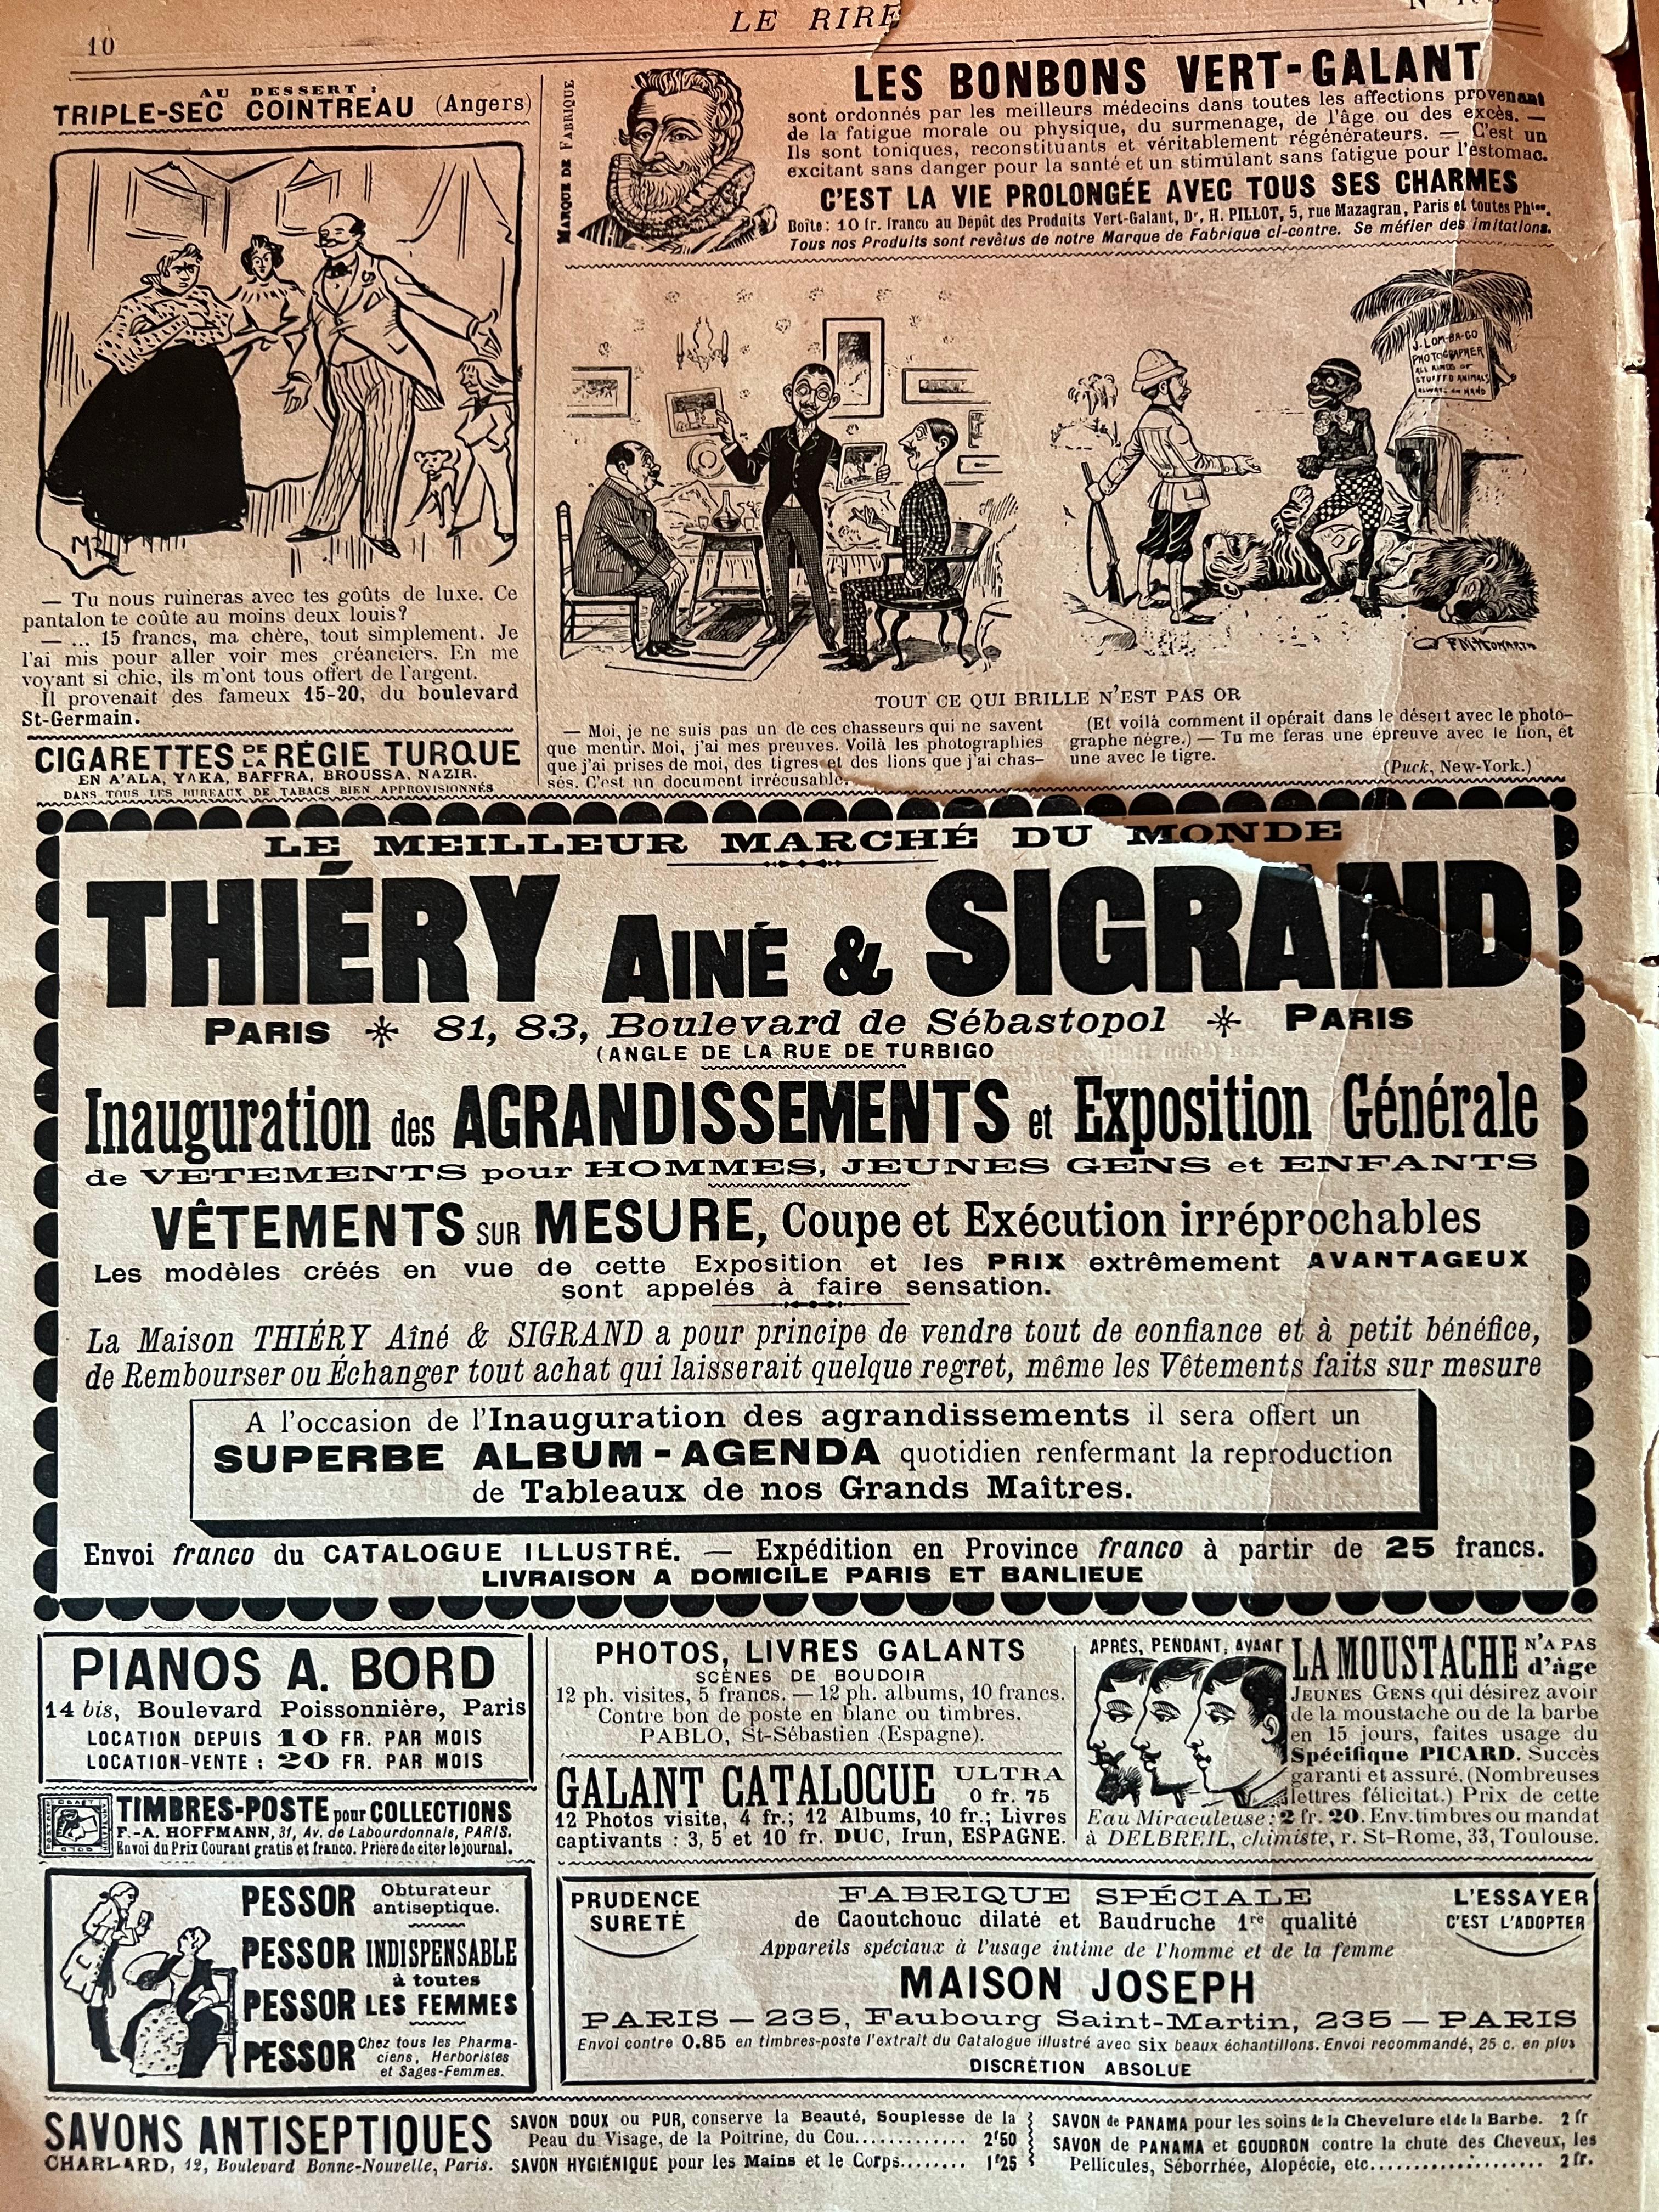 Couvertures de magazines originales « Le Rire » de la fin du XIXe siècle dans des cadres dorés, lot de 2 en vente 9